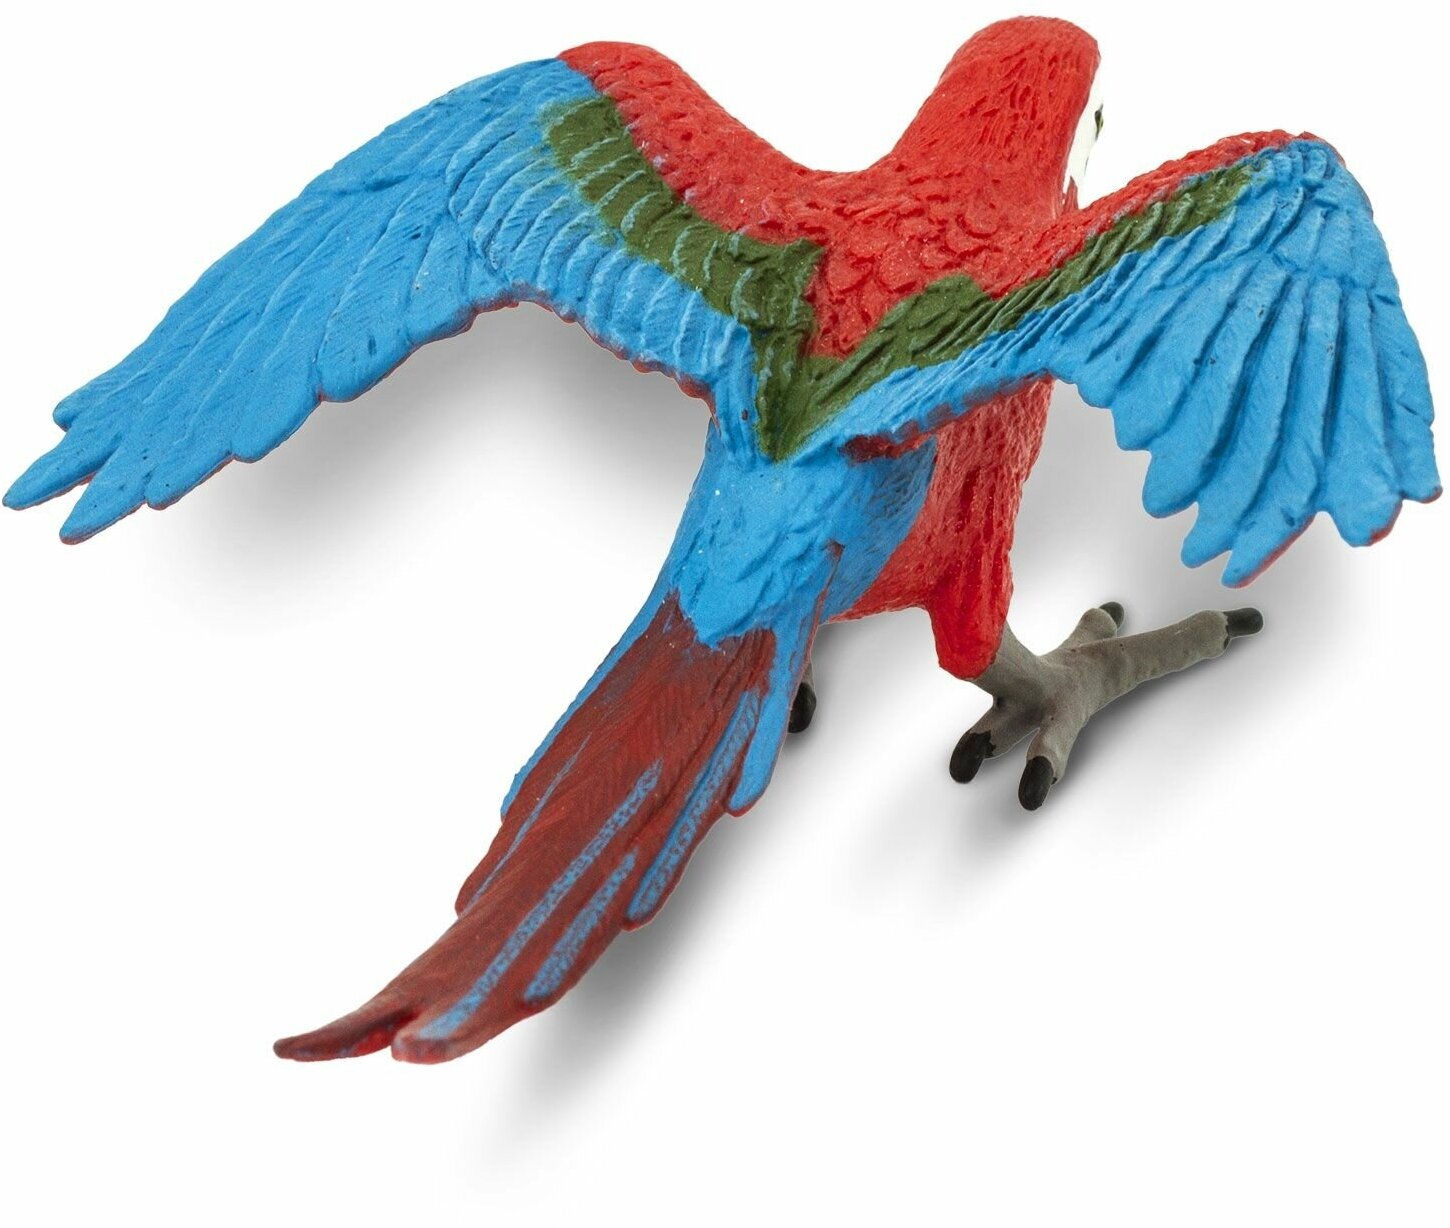 Фигурка птицы Safari Ltd Попугай Зеленокрылый ара, для детей, игрушка коллекционная, 263929